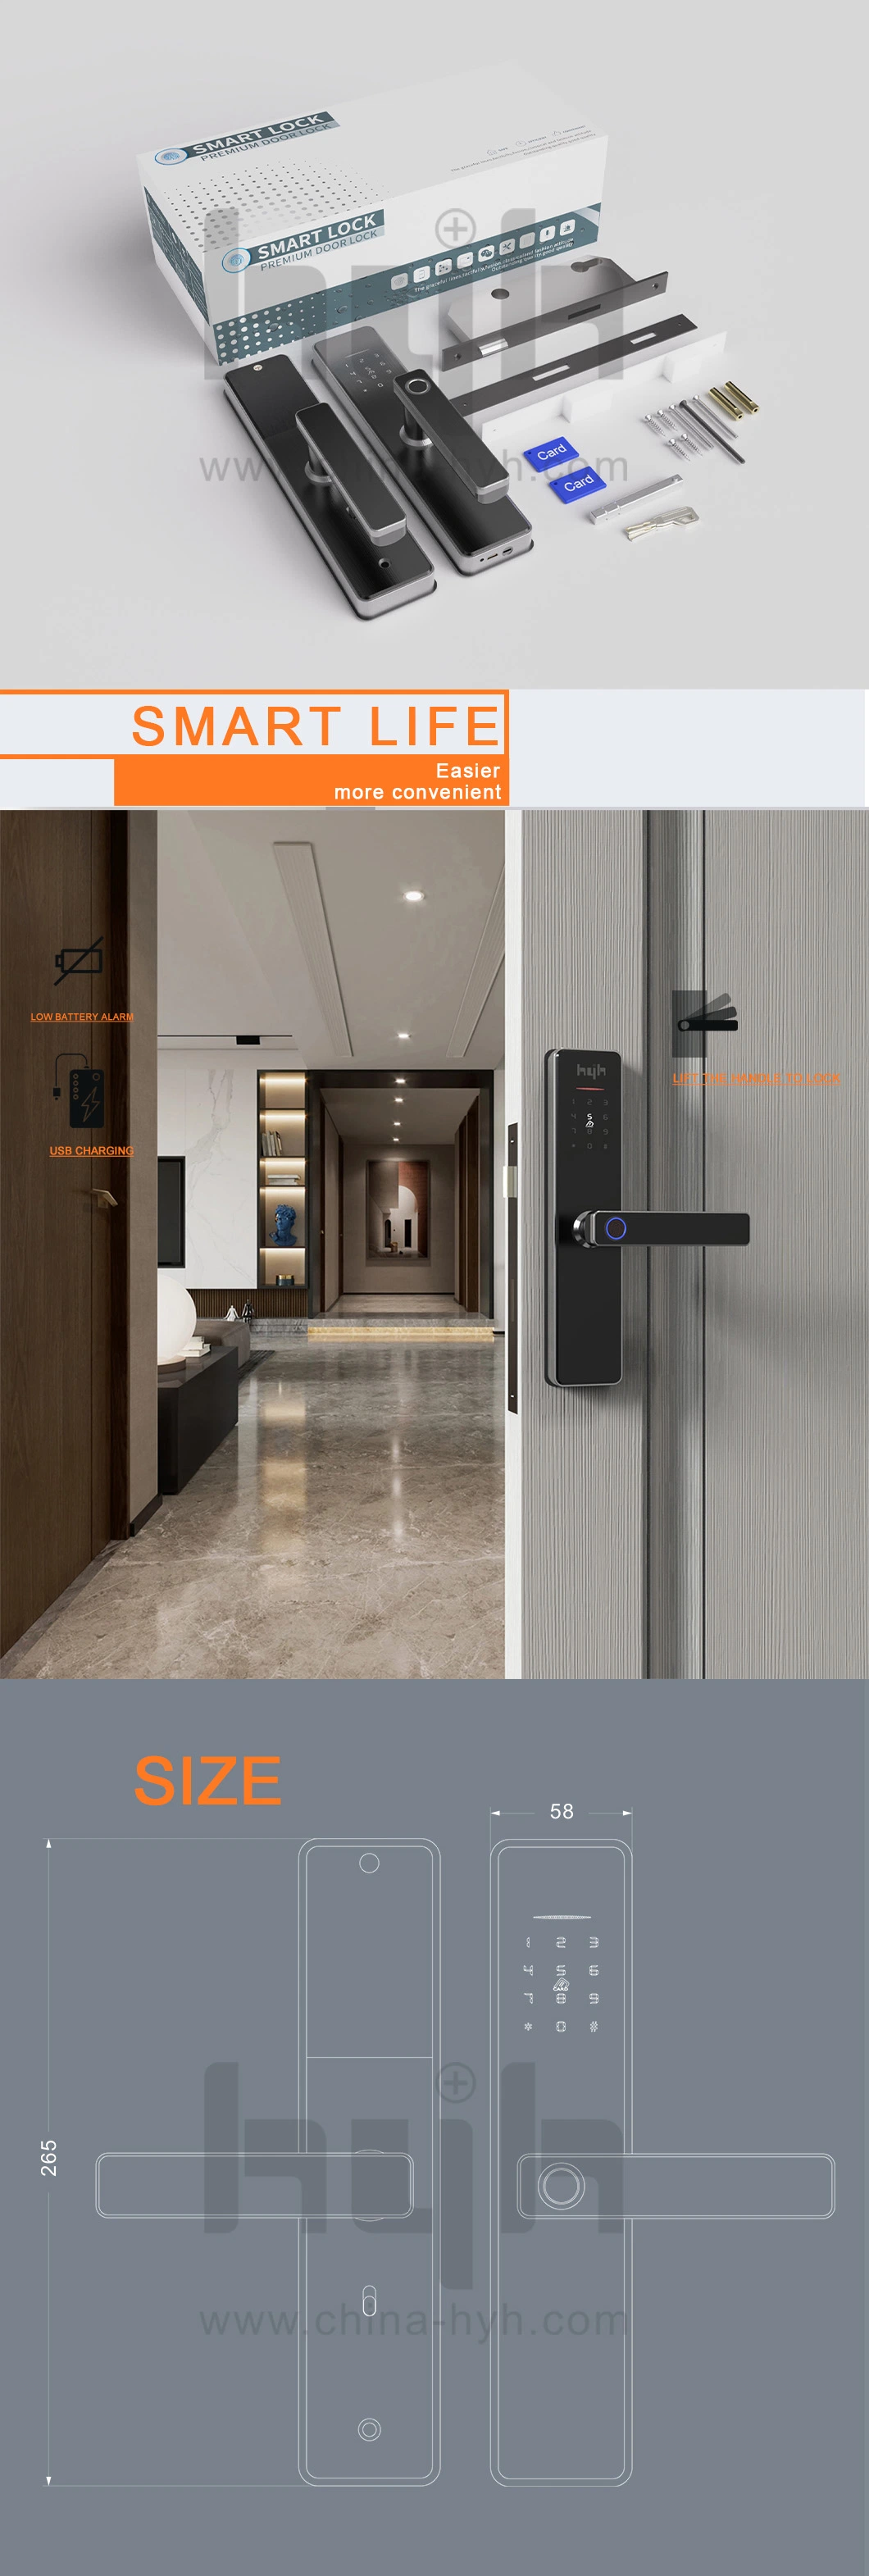 Smart Bedroom WiFi Electronic Intelligent Tuya Digital Fingerprint Smart Door Lock